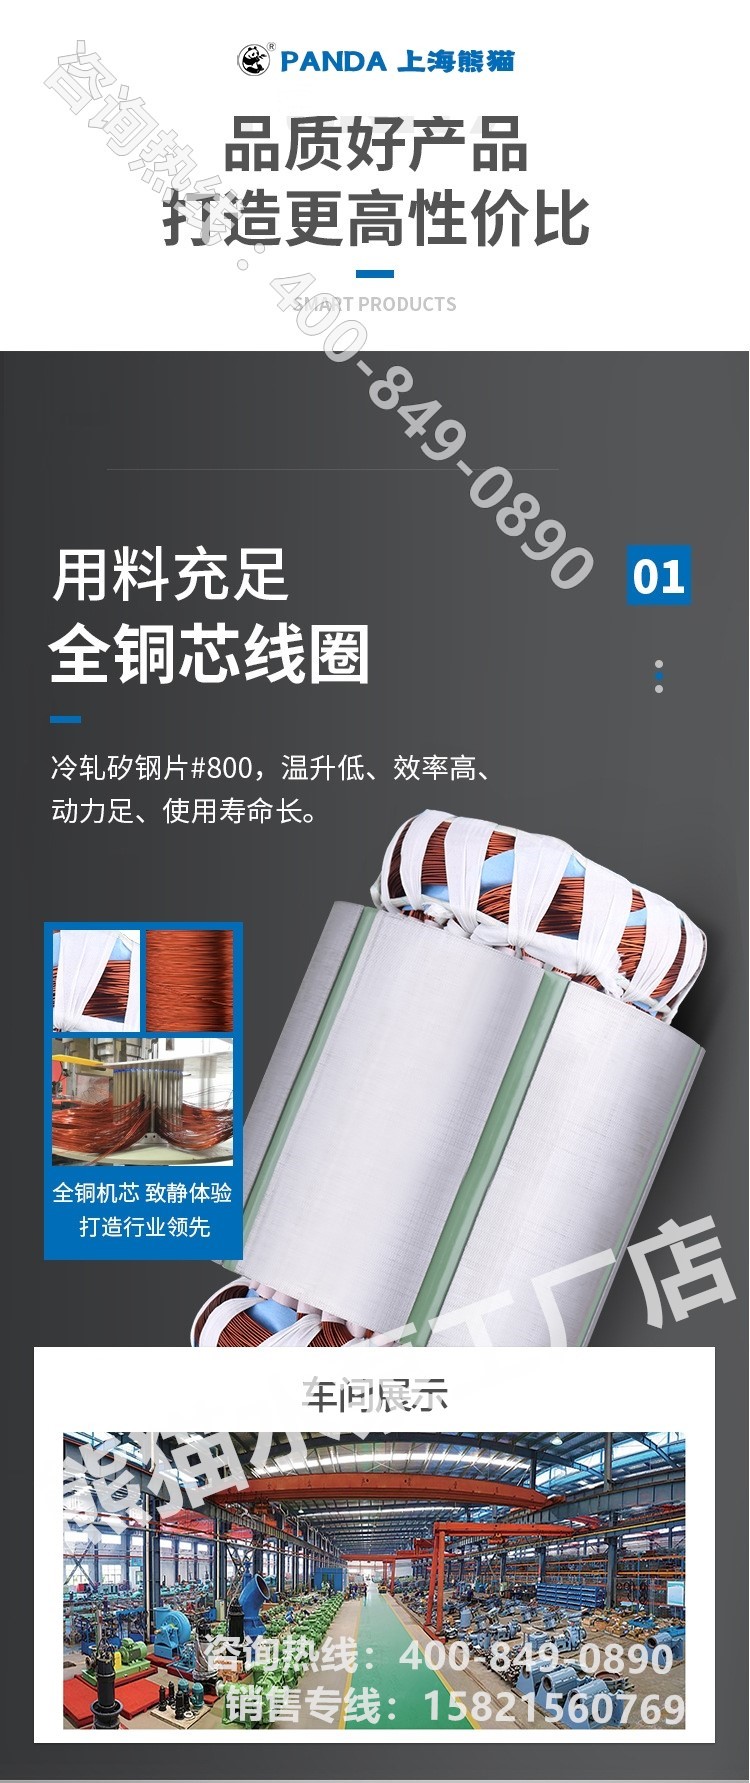 上海熊猫水泵JYWQ自动搅匀排污泵潜水泵国标铰刀潜污泵污水泵